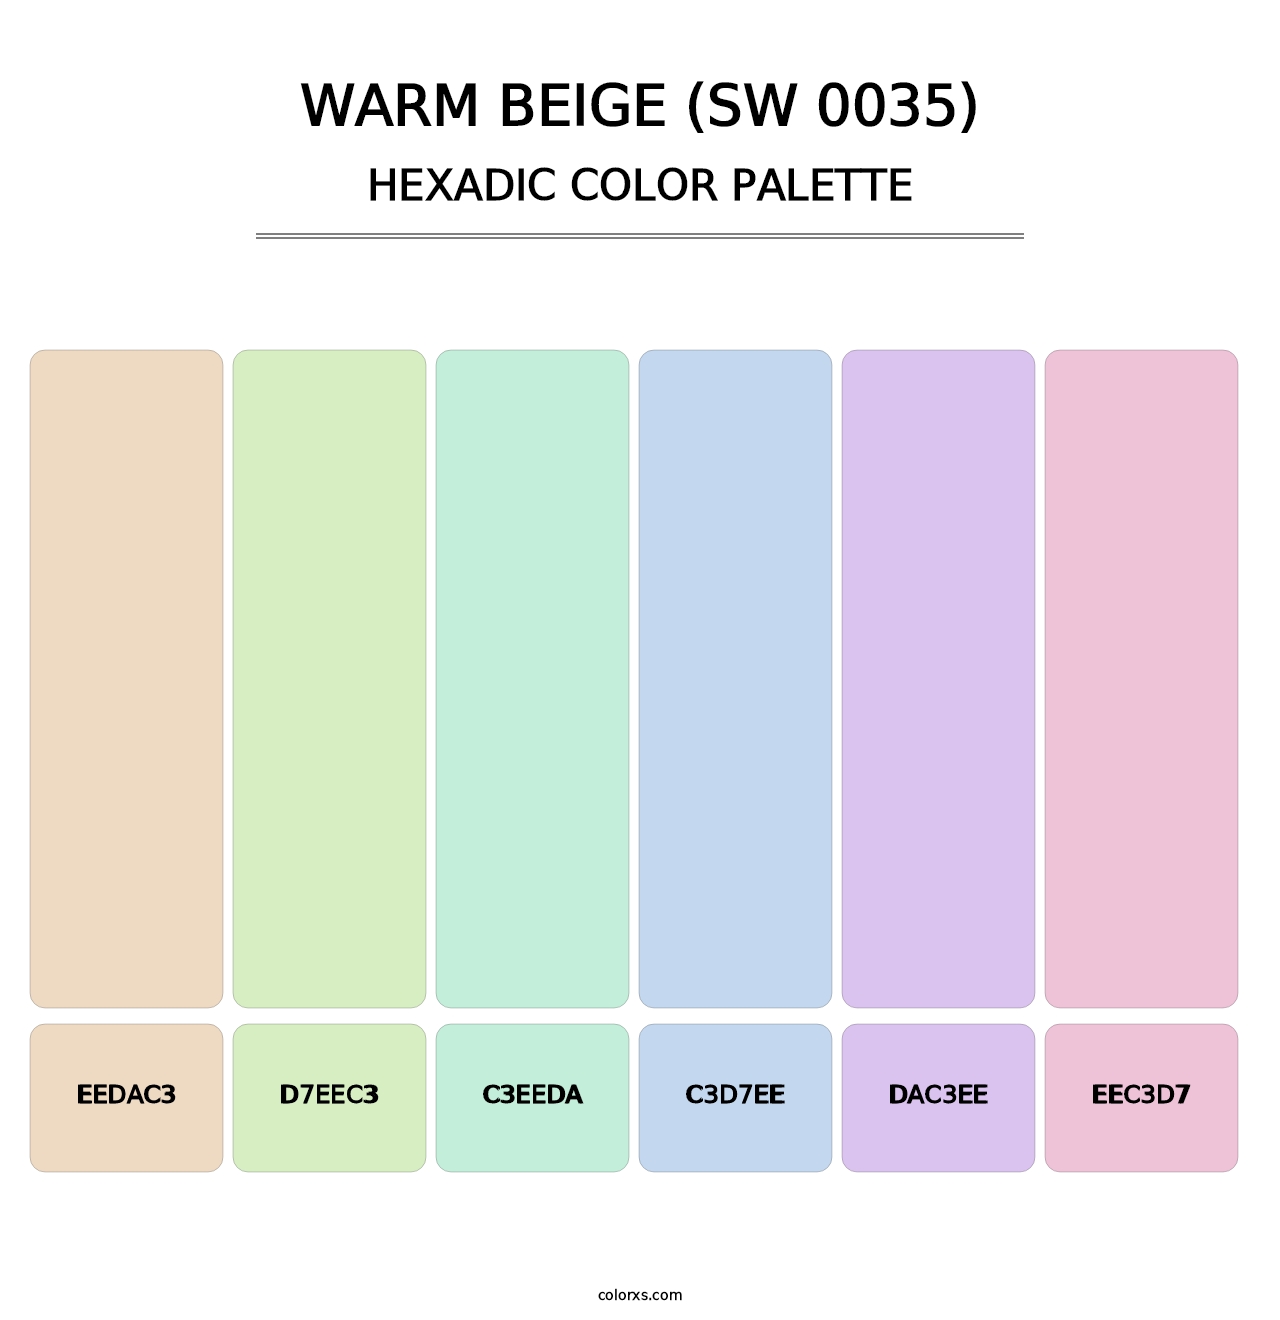 Warm Beige (SW 0035) - Hexadic Color Palette